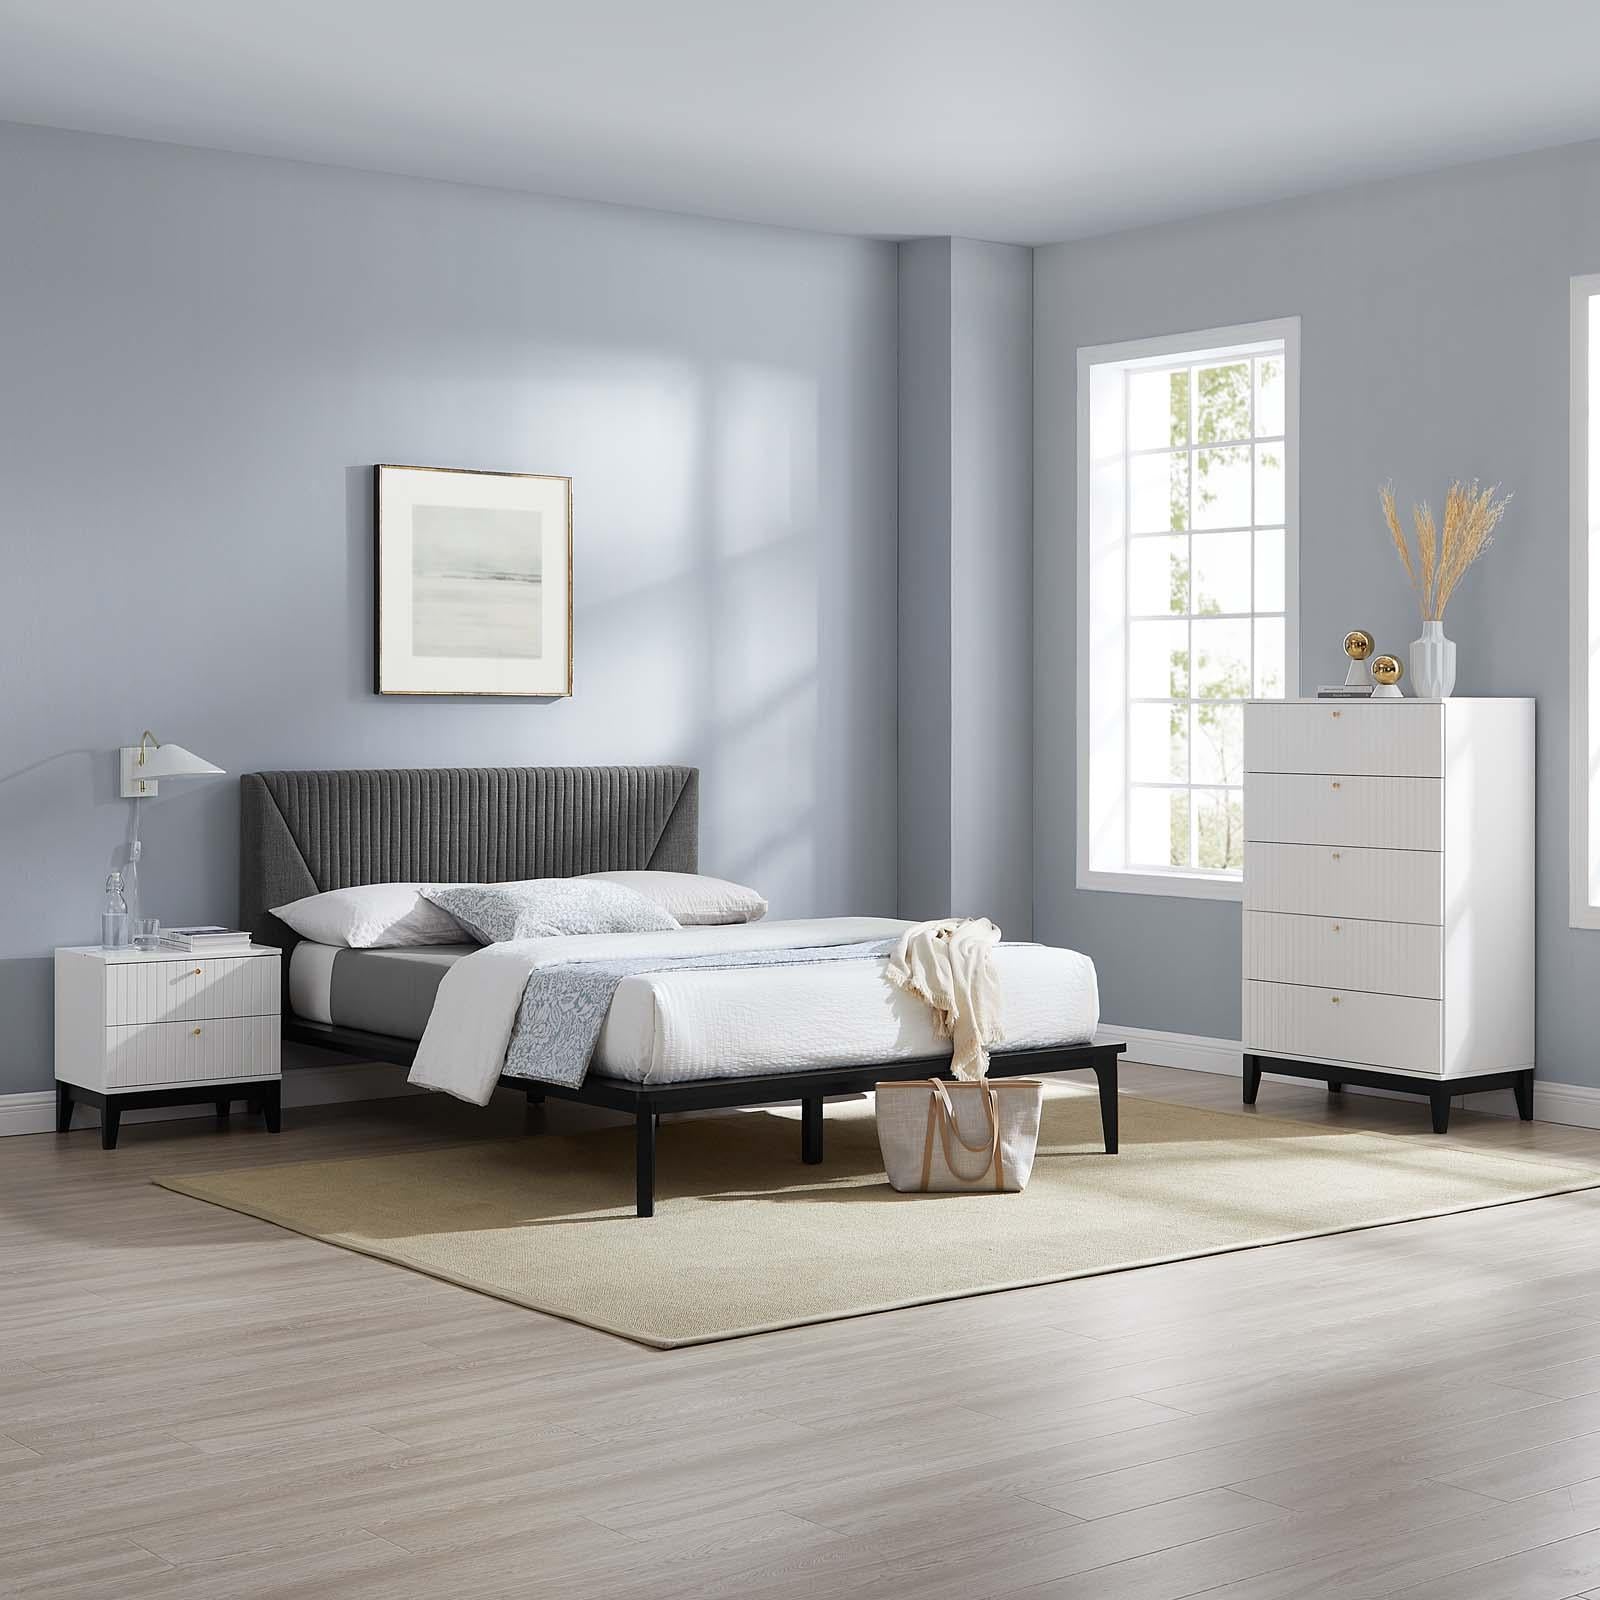 Modway Furniture Modern Dakota 3 Piece Upholstered Bedroom Set - MOD-6962